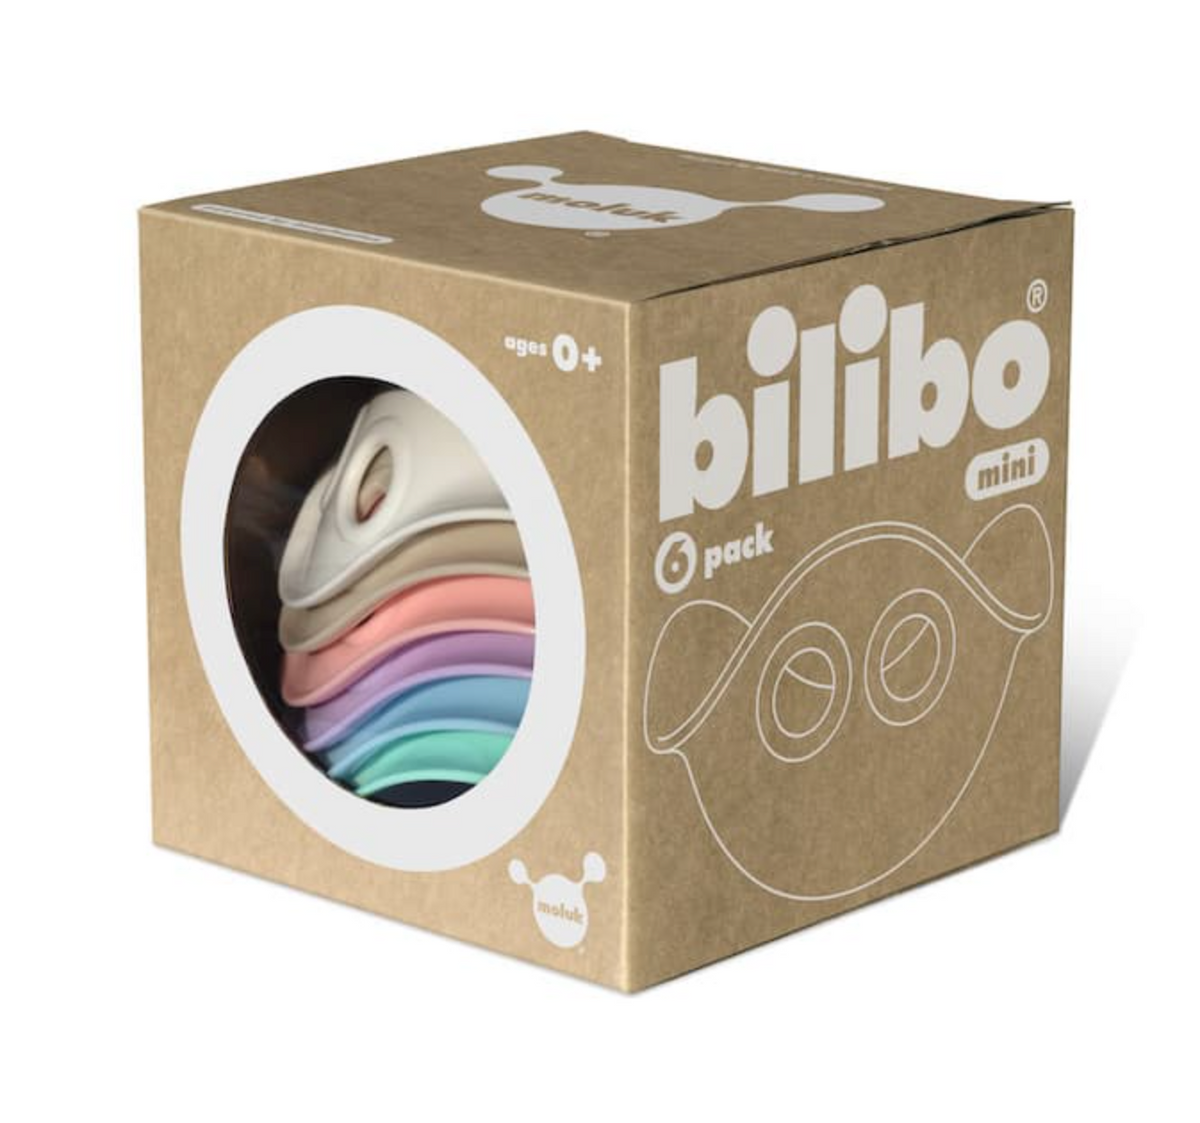 Bilibo Mini - Pastel